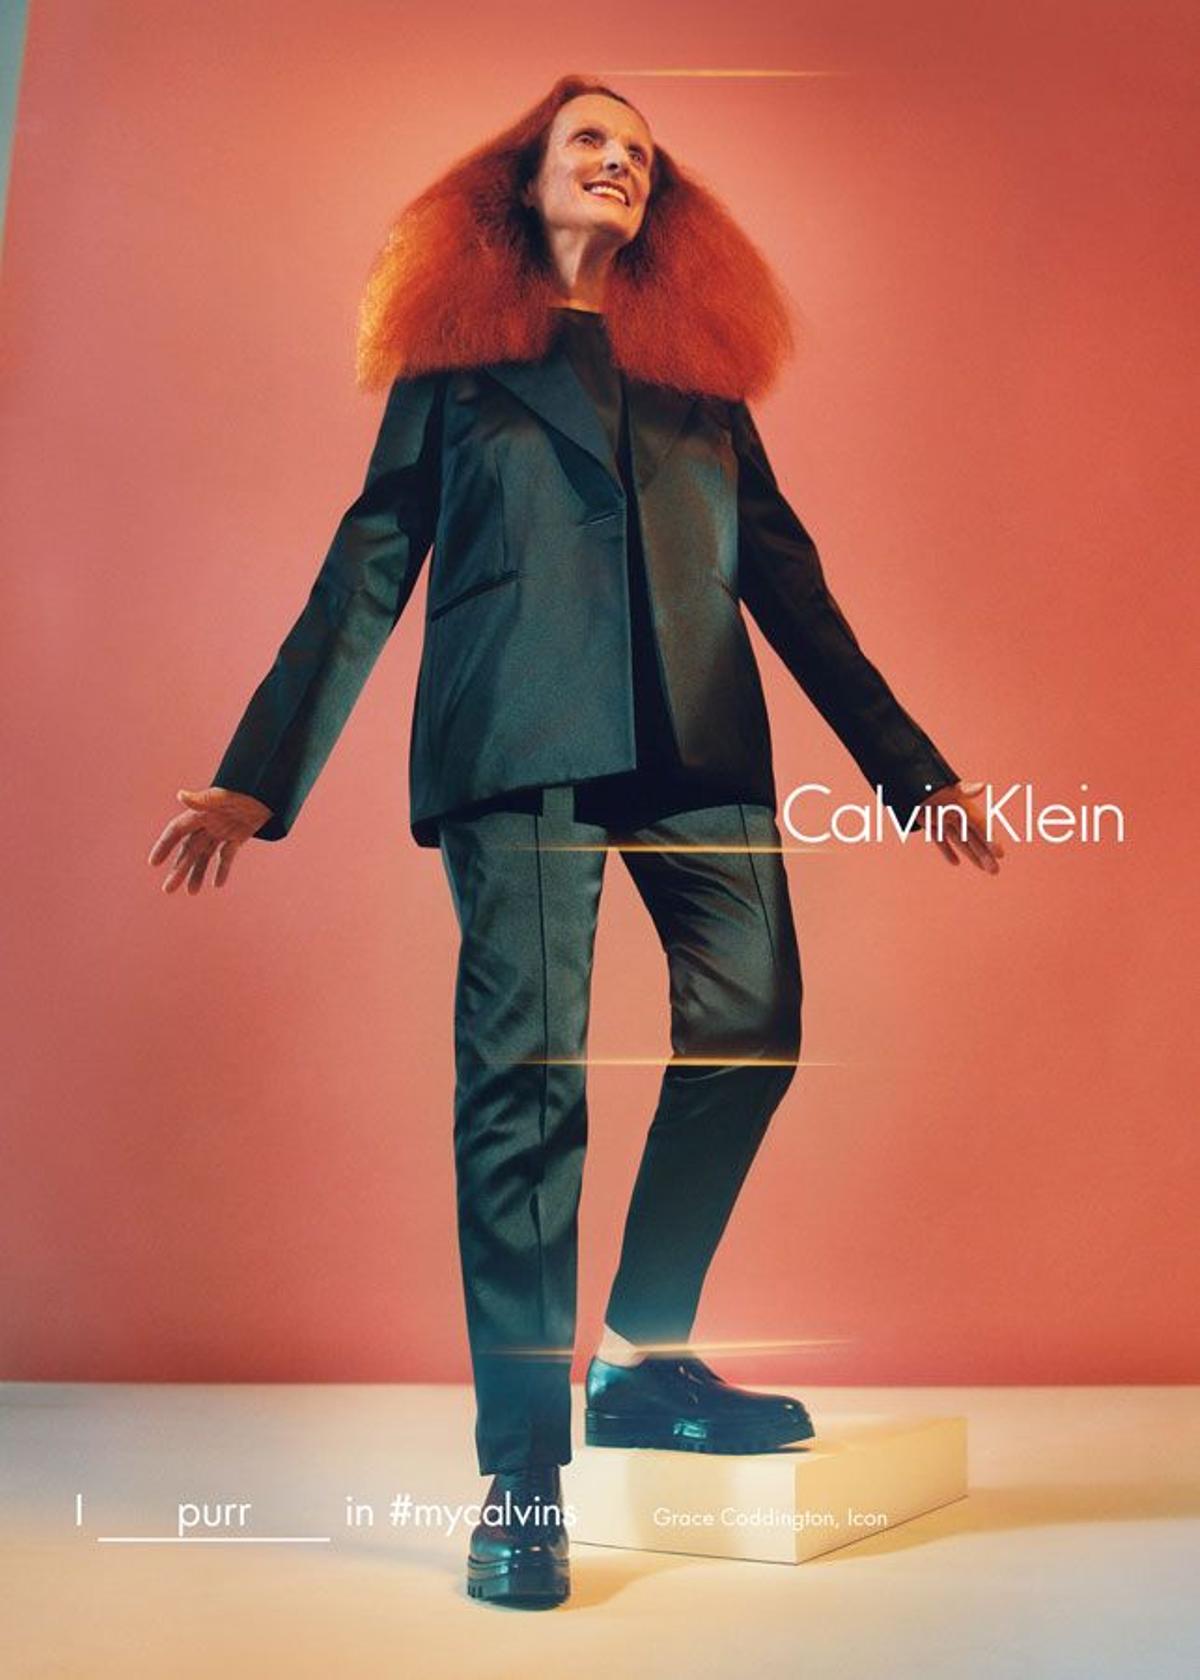 Campaña Calvin Klein otoño 2016: Grace Coddington